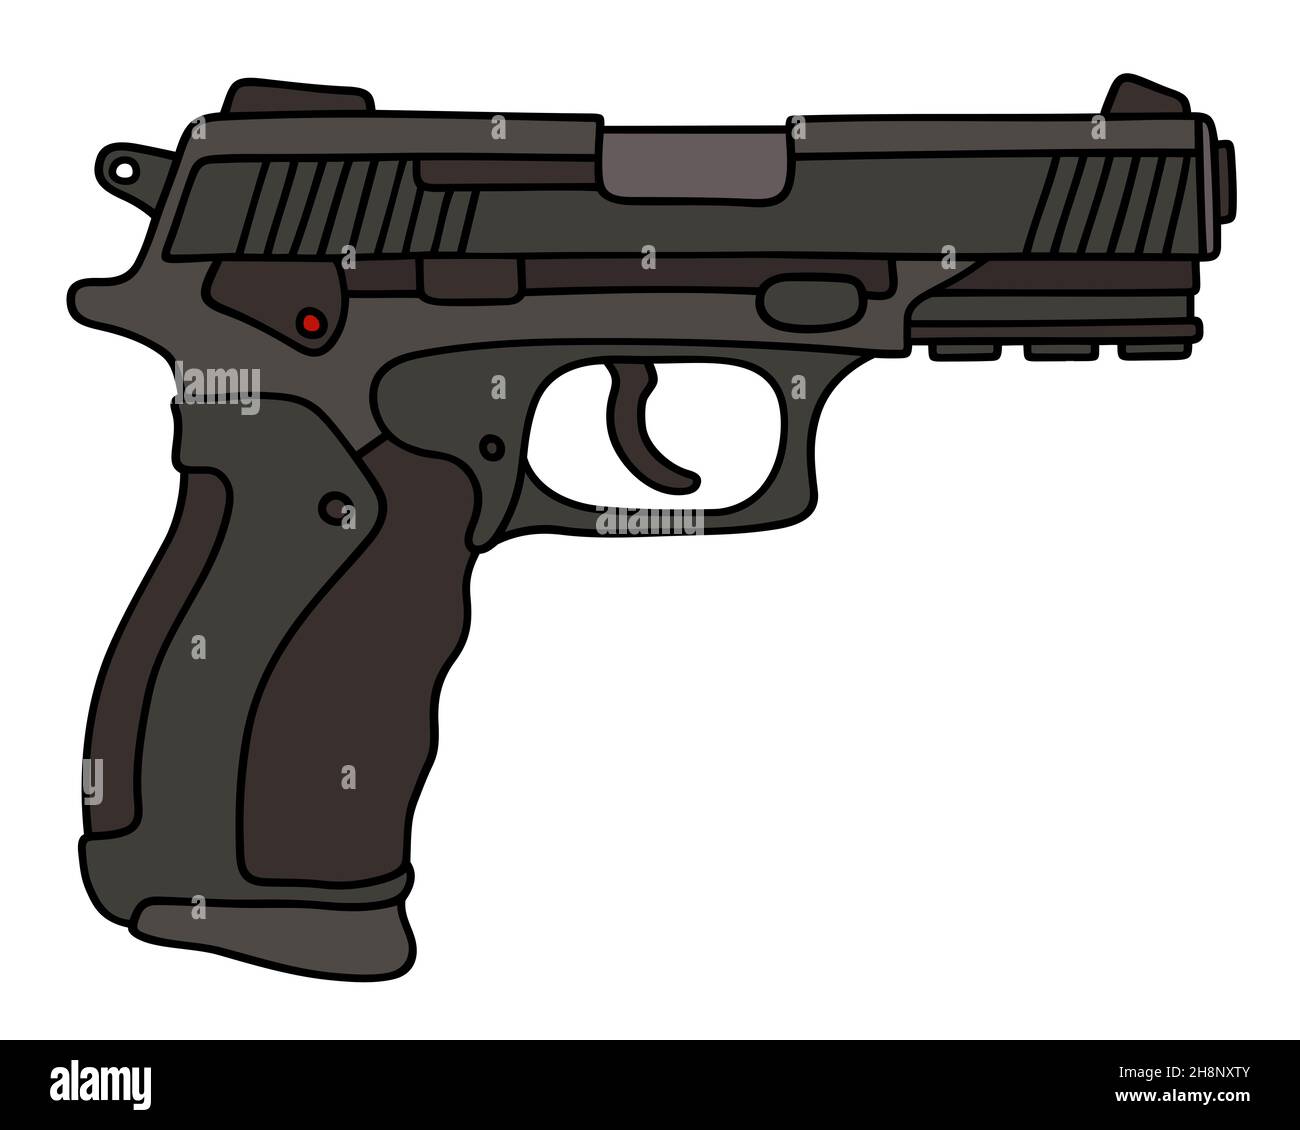 Handzeichnung einer kürzlich erschienenen schwarzen automatischen Pistole Stockfoto